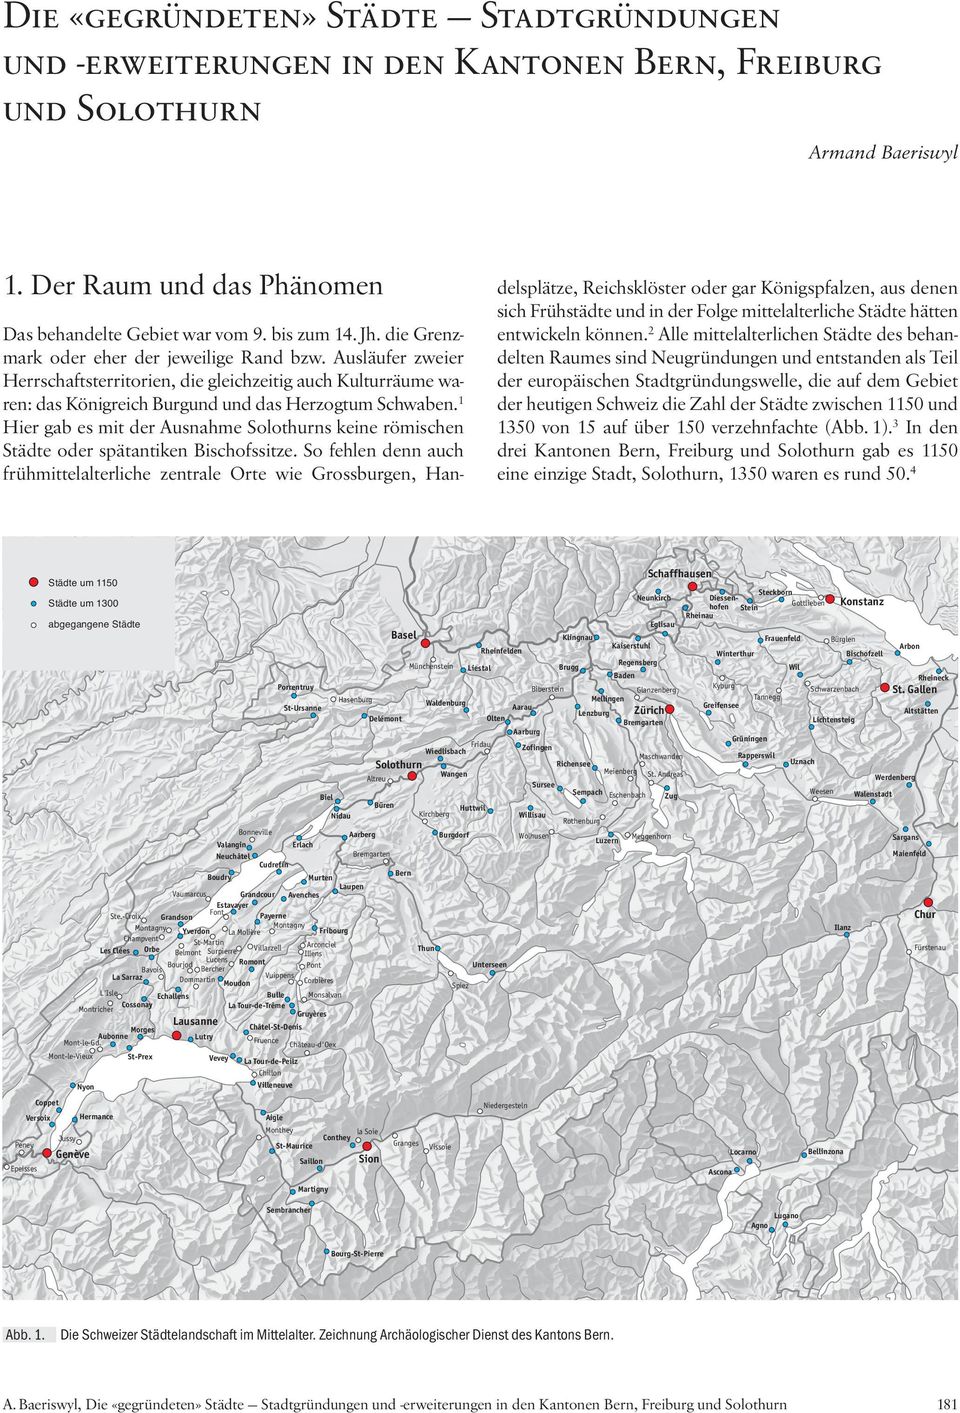 1 Hier gab es mit der Ausnahme Solothurns keine römischen Städte oder spätantiken Bischofssitze.